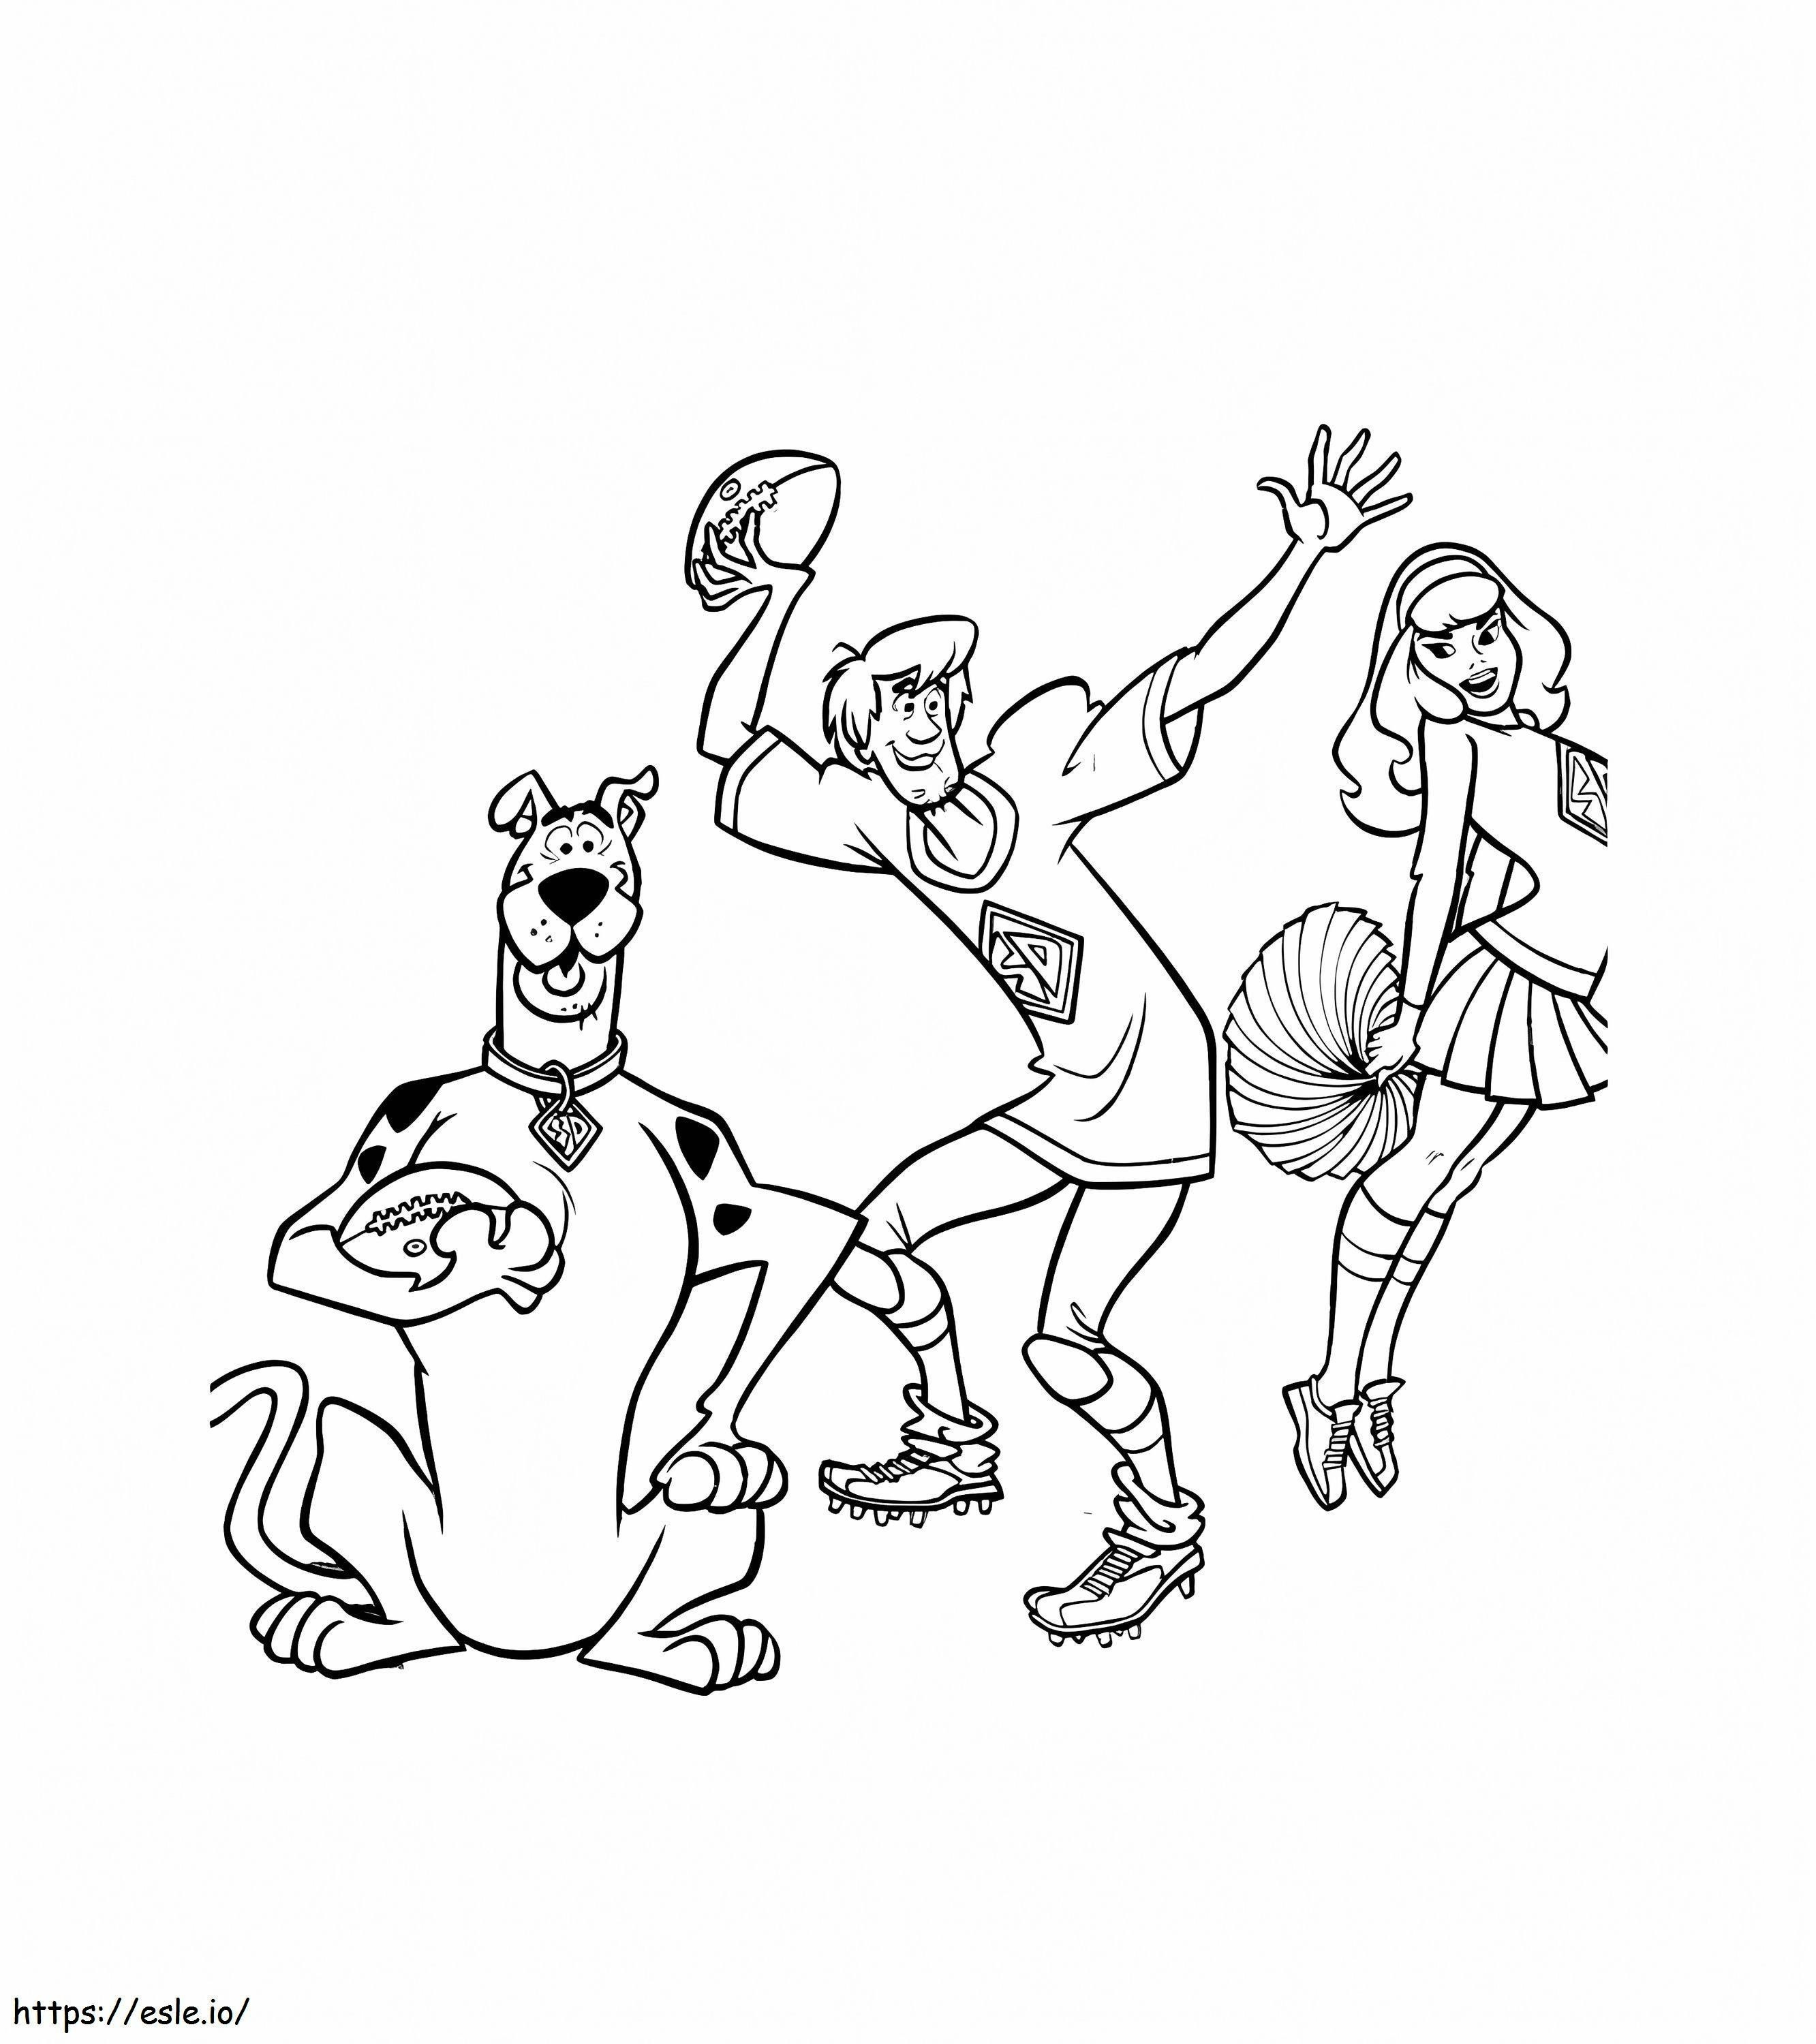 Scooby Doo spielt Rugby ausmalbilder